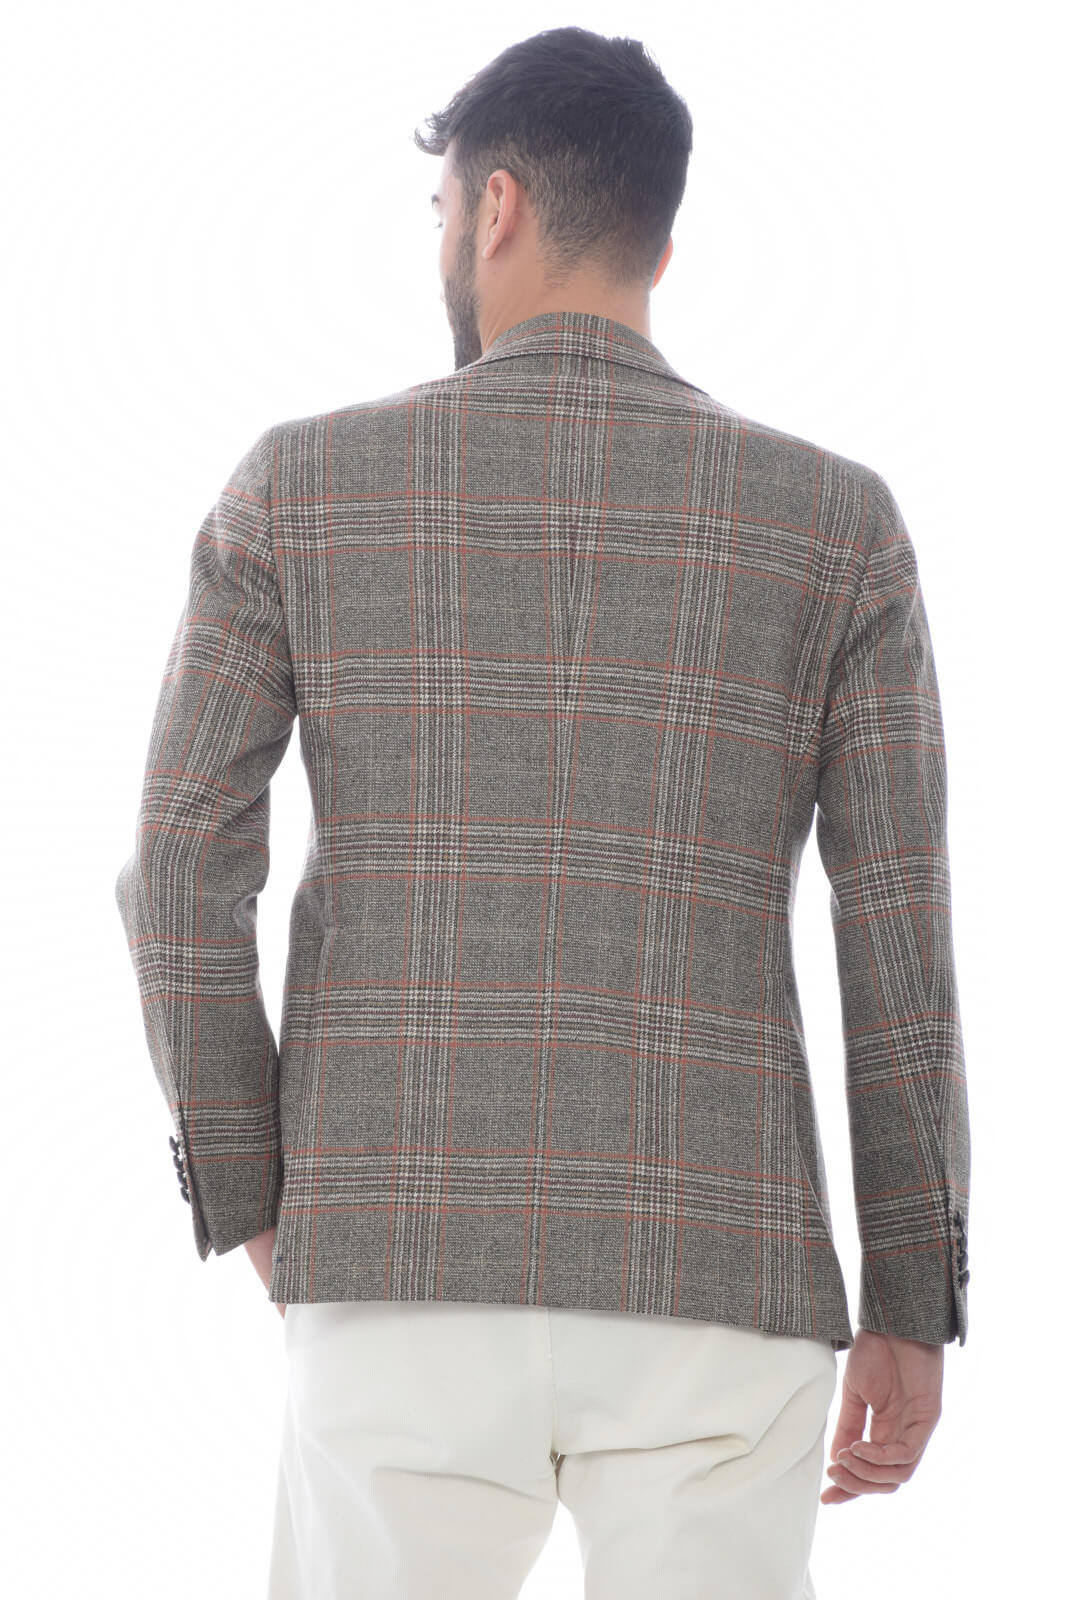 Tagliatore Men's Jacket in Prince of Wales pattern